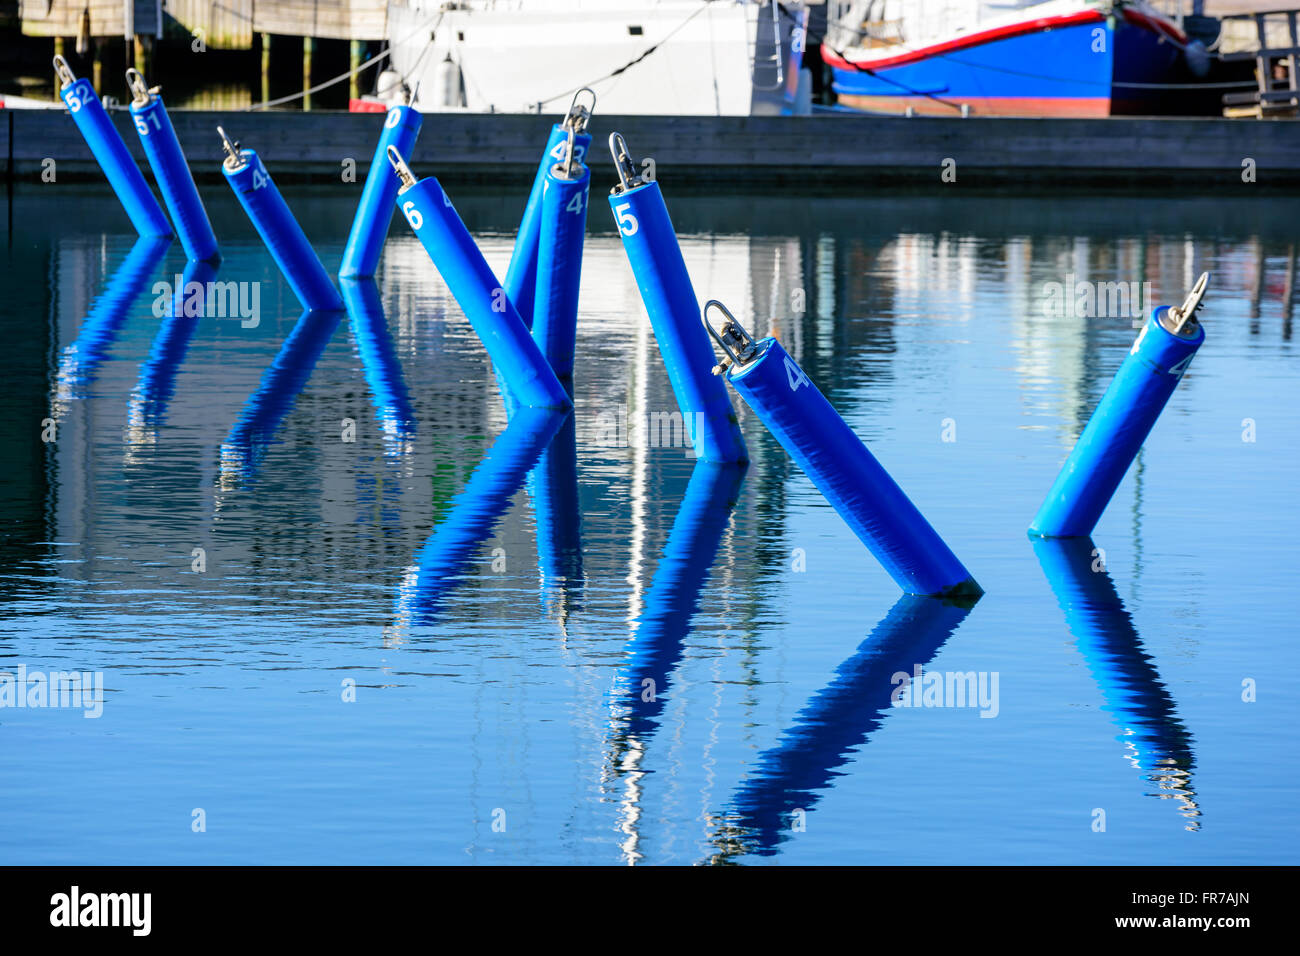 Blau, nummerierte Liegeplätze in einer Marina. Keine Boote an sie gebunden. Ruhiges Meer und feinen Reflexionen der Bojen im Wasser. Stockfoto